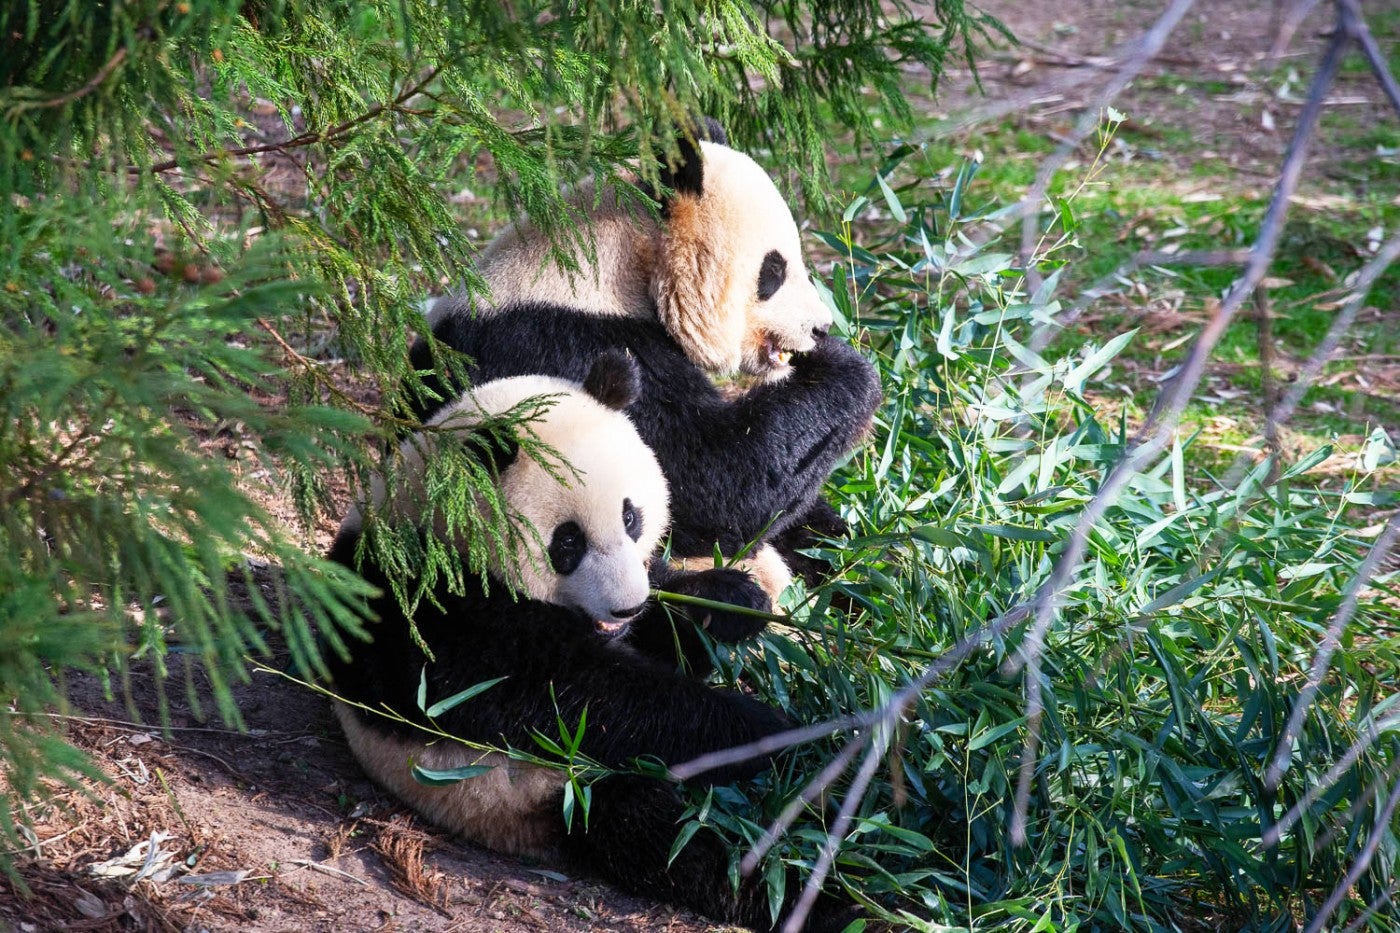 Giant panda Xiao Qi Ji (foreground) and his mother Mei Xiang eat bamboo side-by-side.